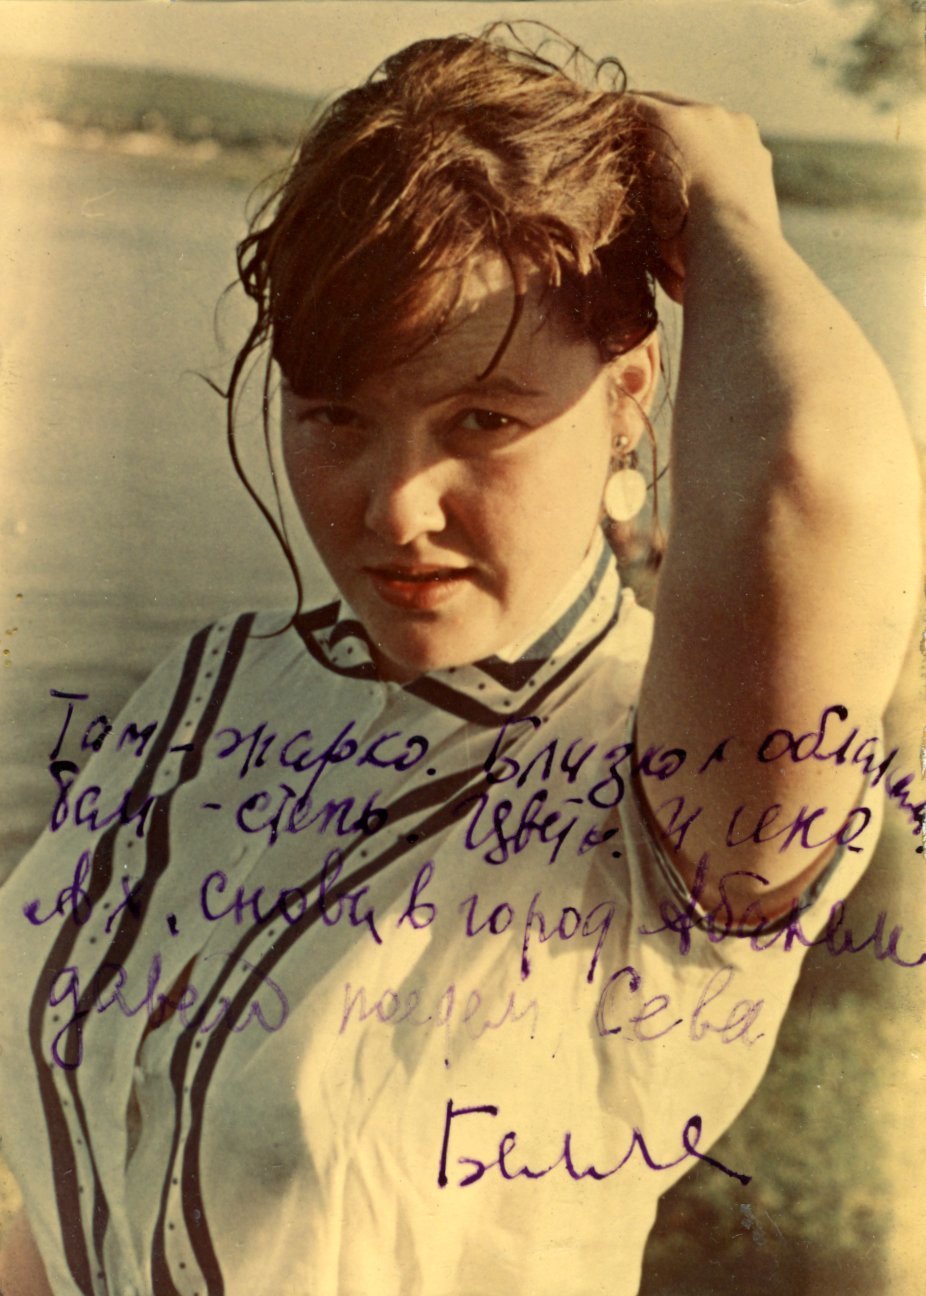 Фотография Беллы
Ахмадулиной с автографом (фото В. Ревича, 1959 год)